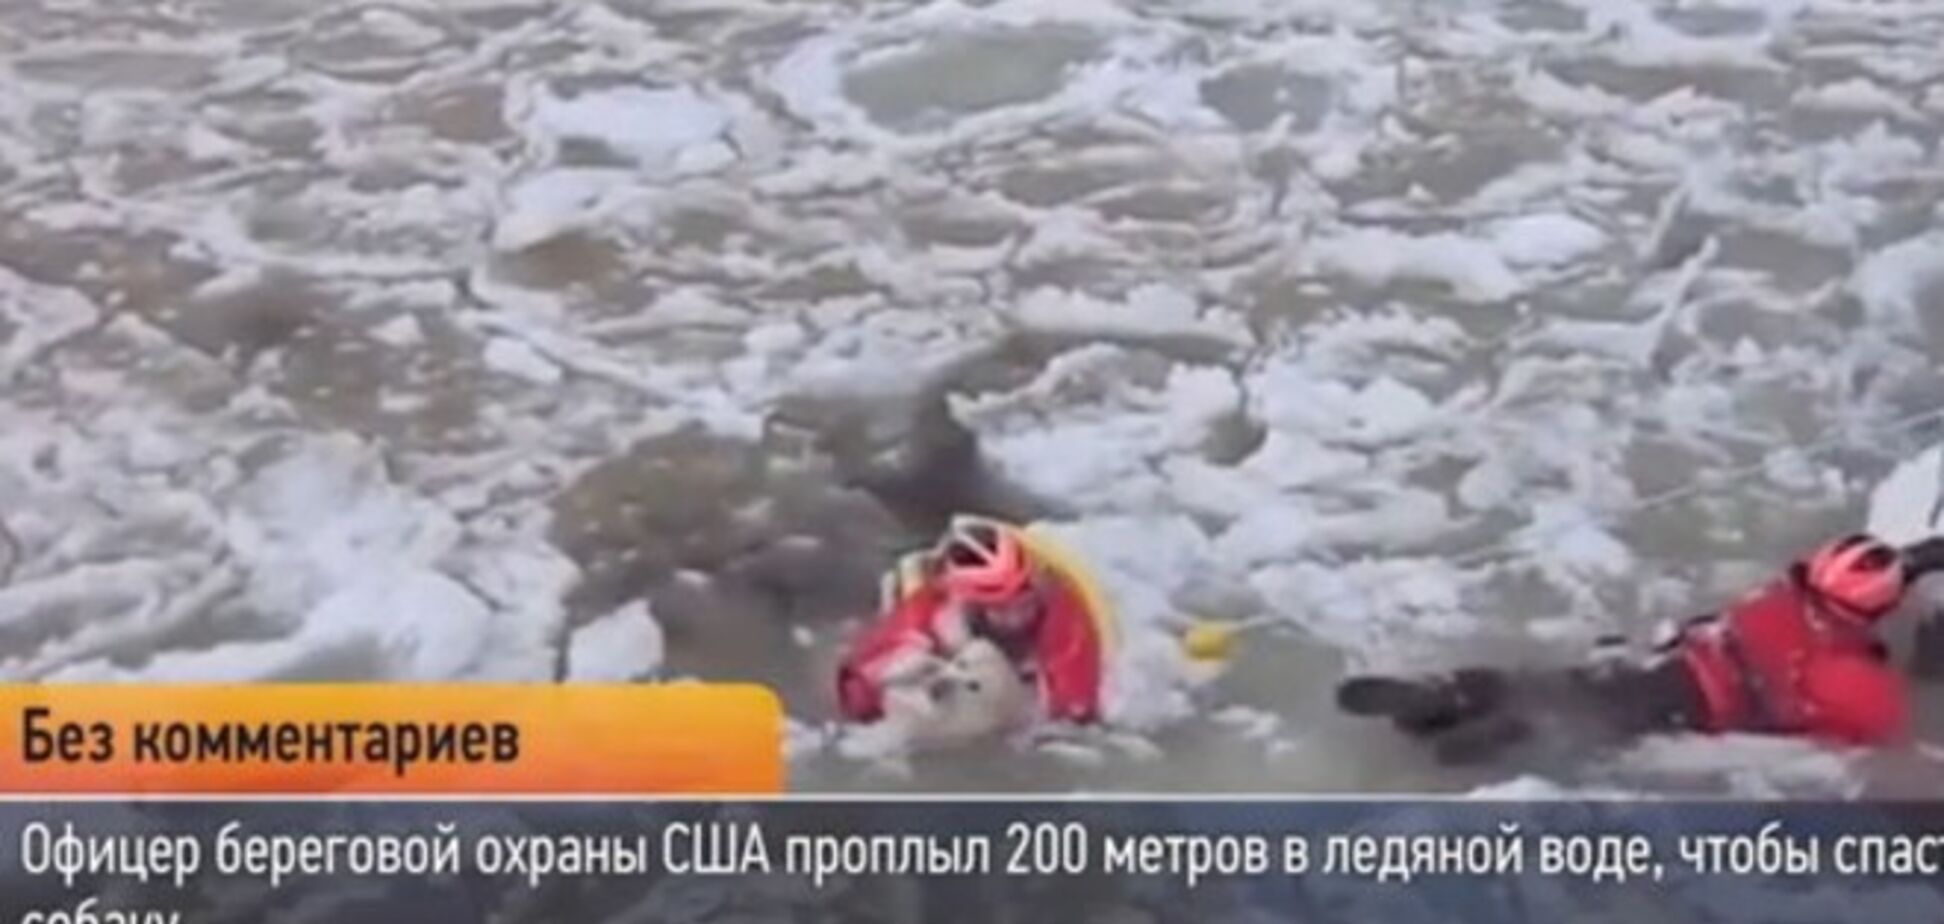 Американец проплыл 200 метров в ледяной воде, чтобы спасти собаку: видеофакт